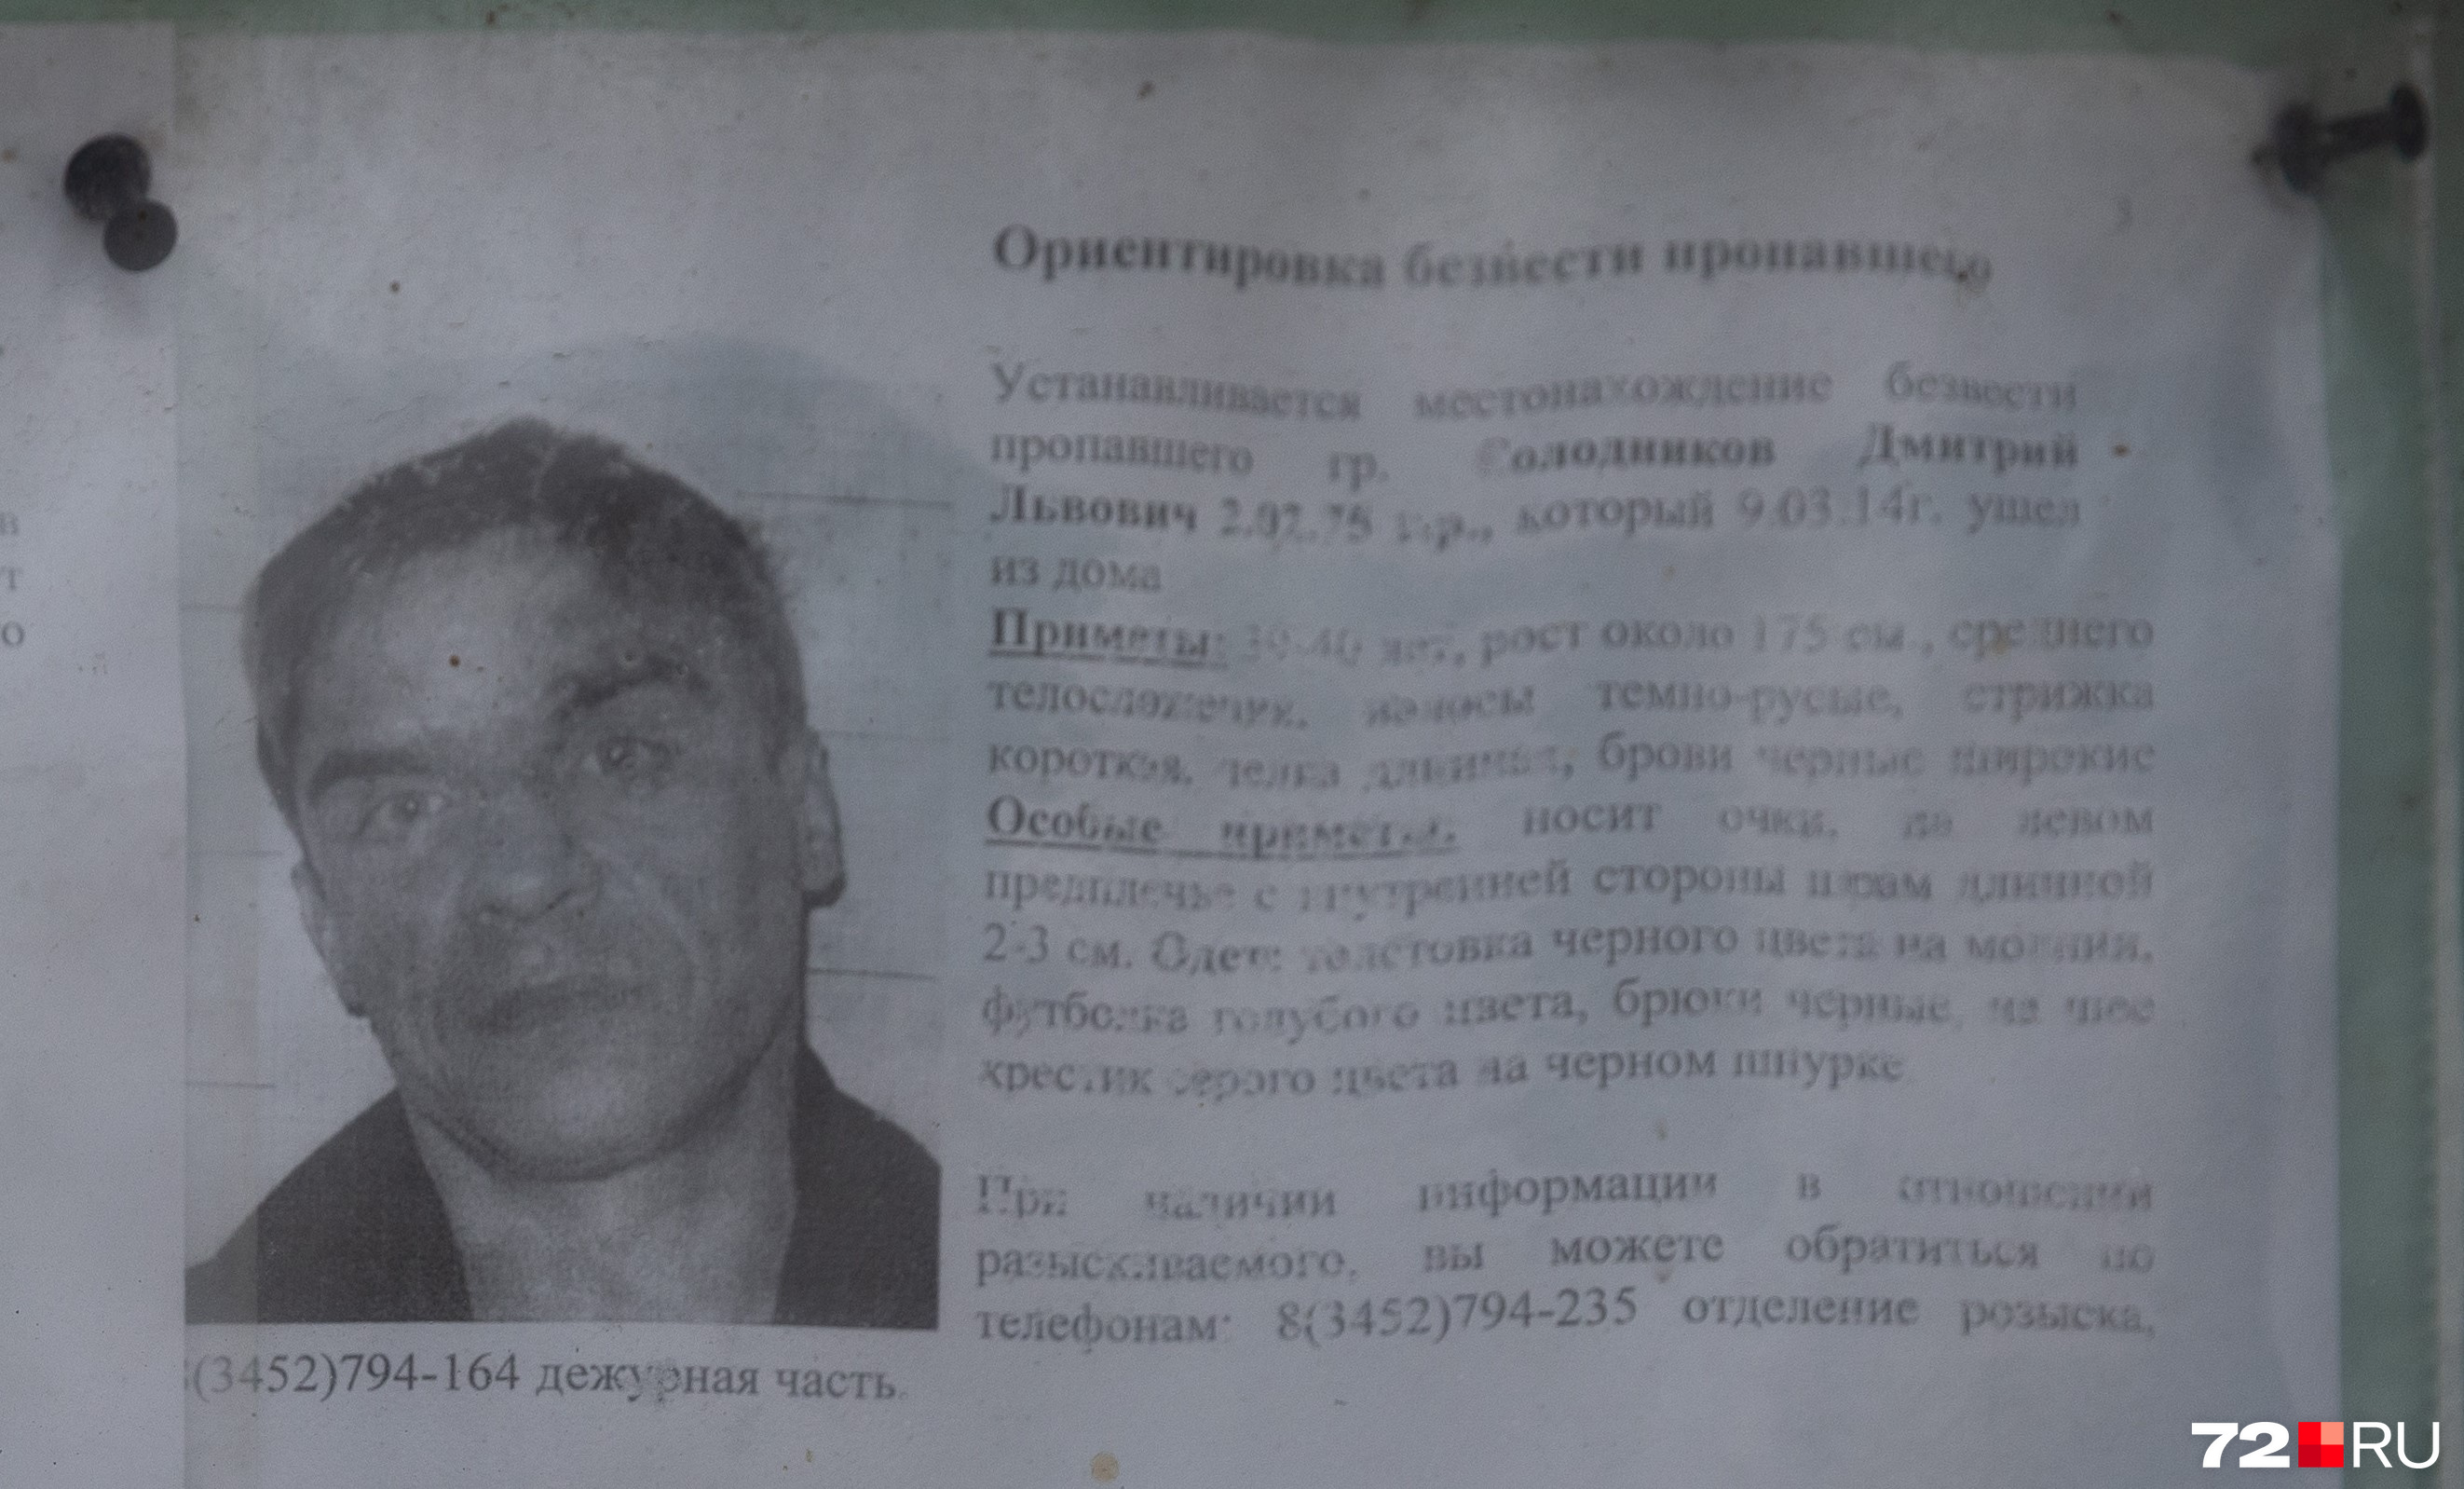 В том же 2014 году в розыск подали Дмитрия Солодникова, который вышел из дома и пропал